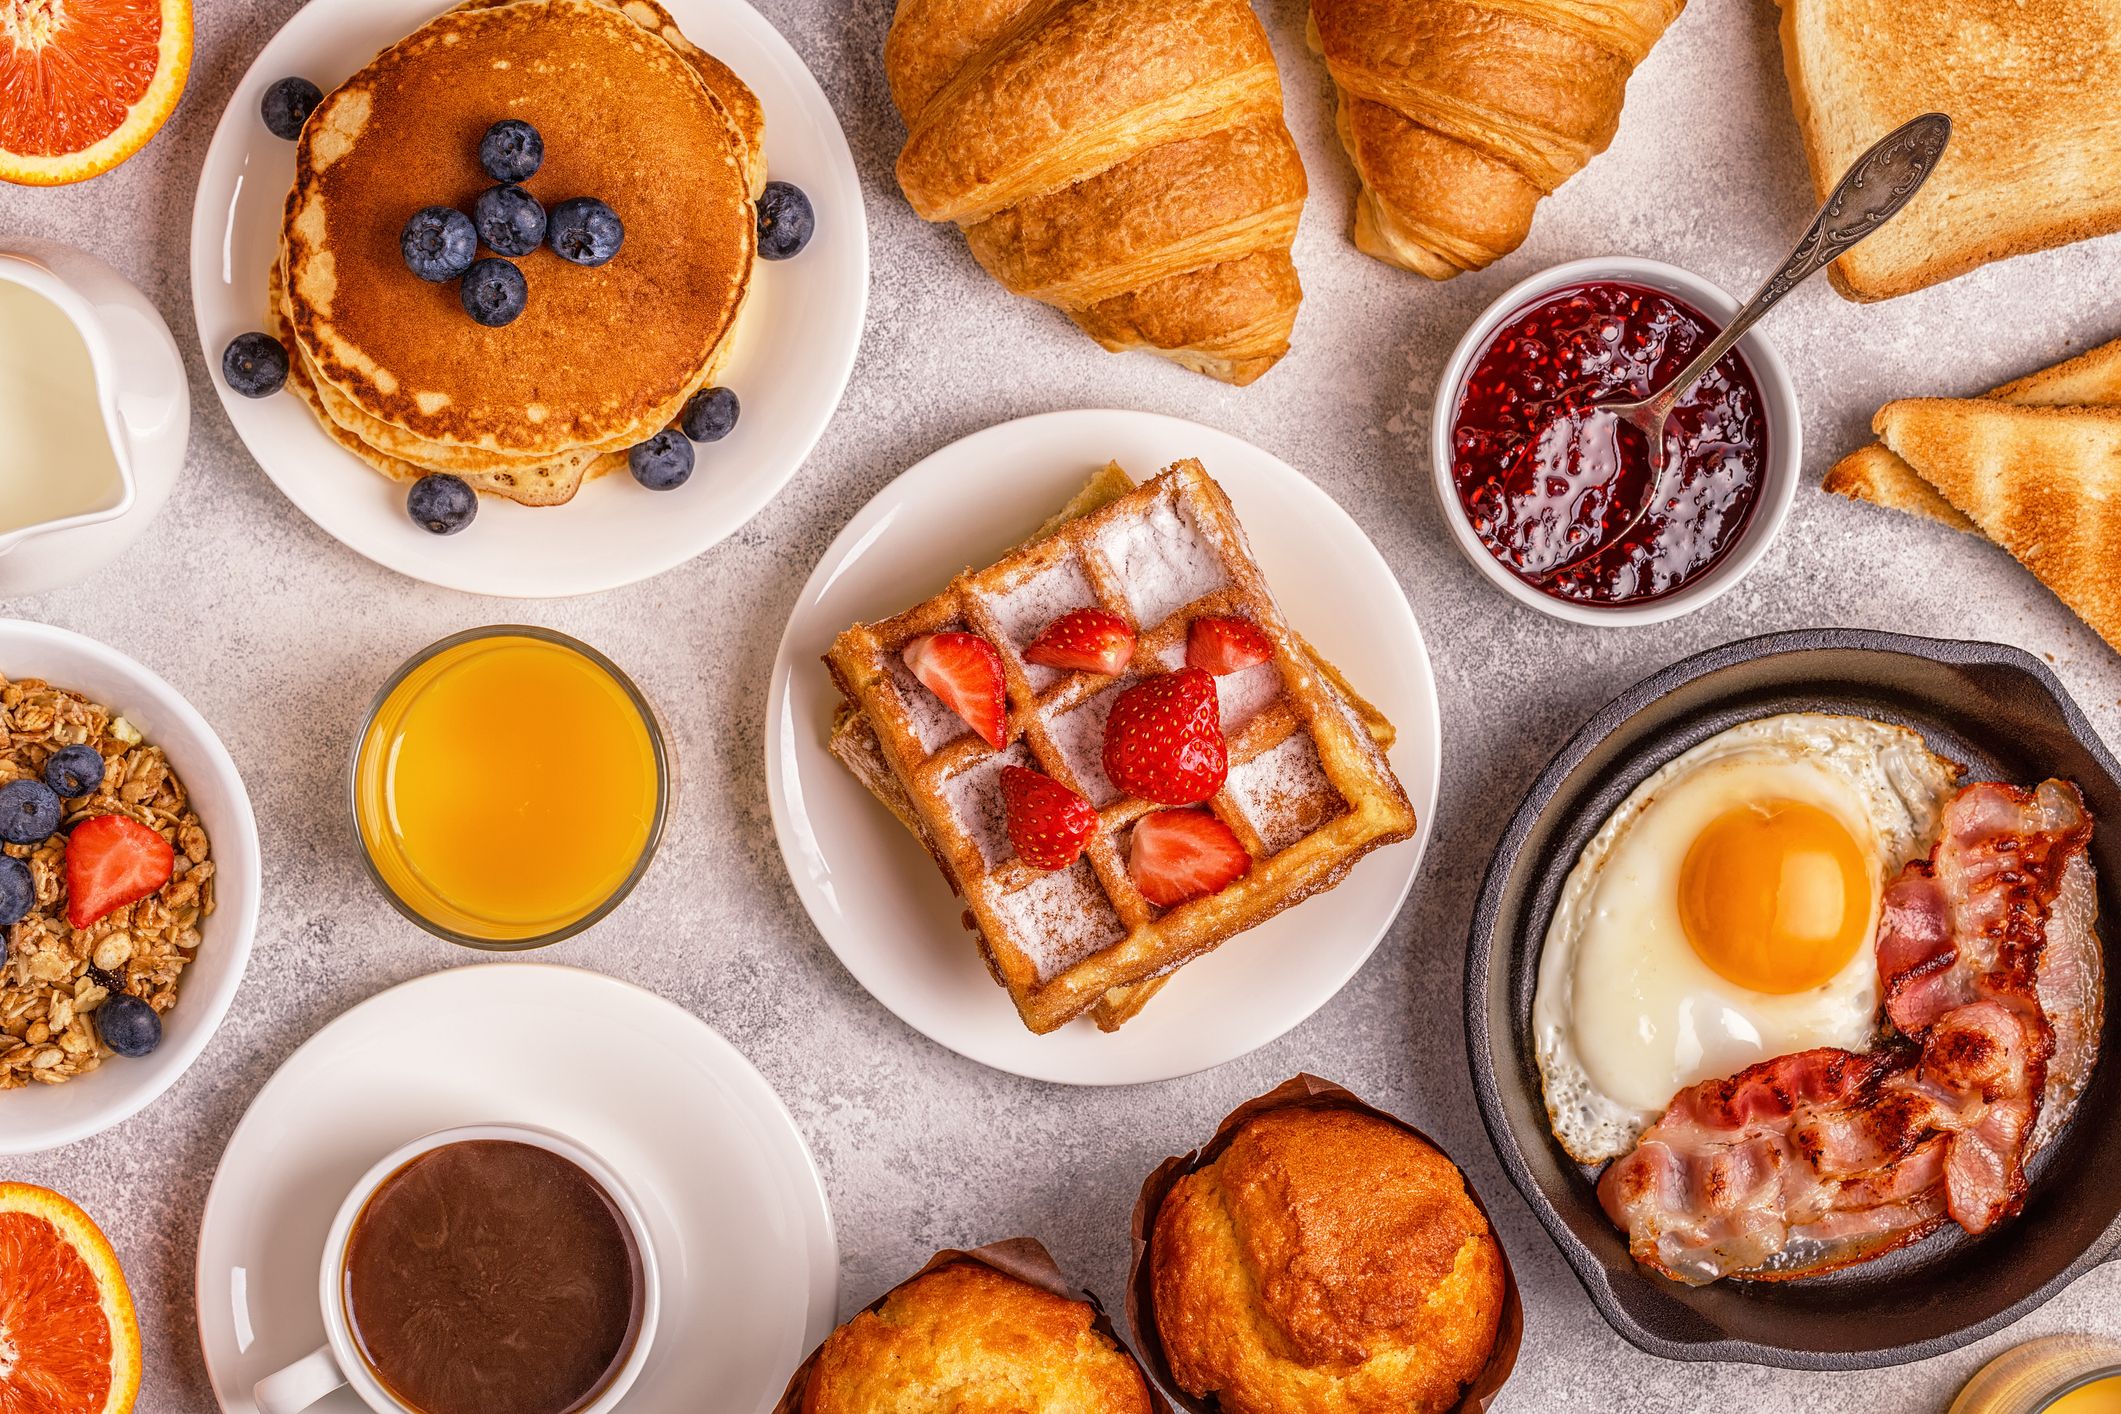 Ιδανικό πρωινό: Καθηγητής του Χάρβαρντ αποκαλύπτει τι πρέπει να τρώμε για καλή υγεία